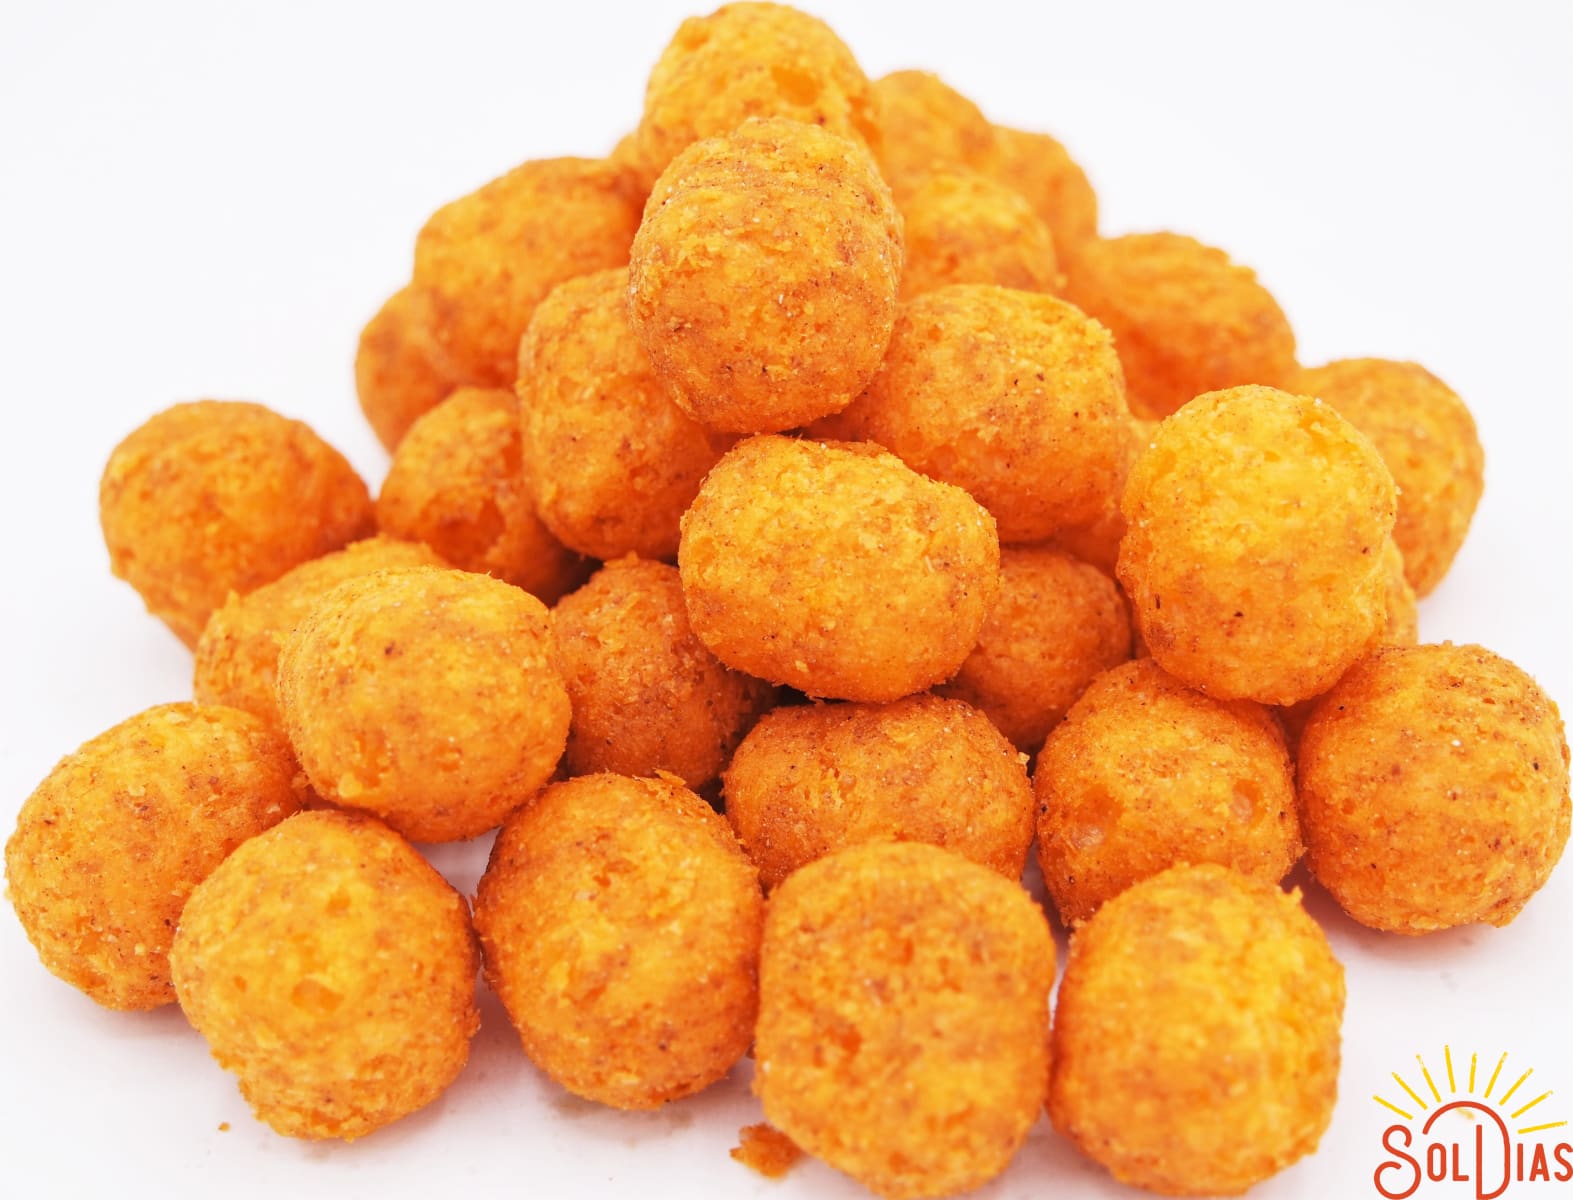 cheetos balls